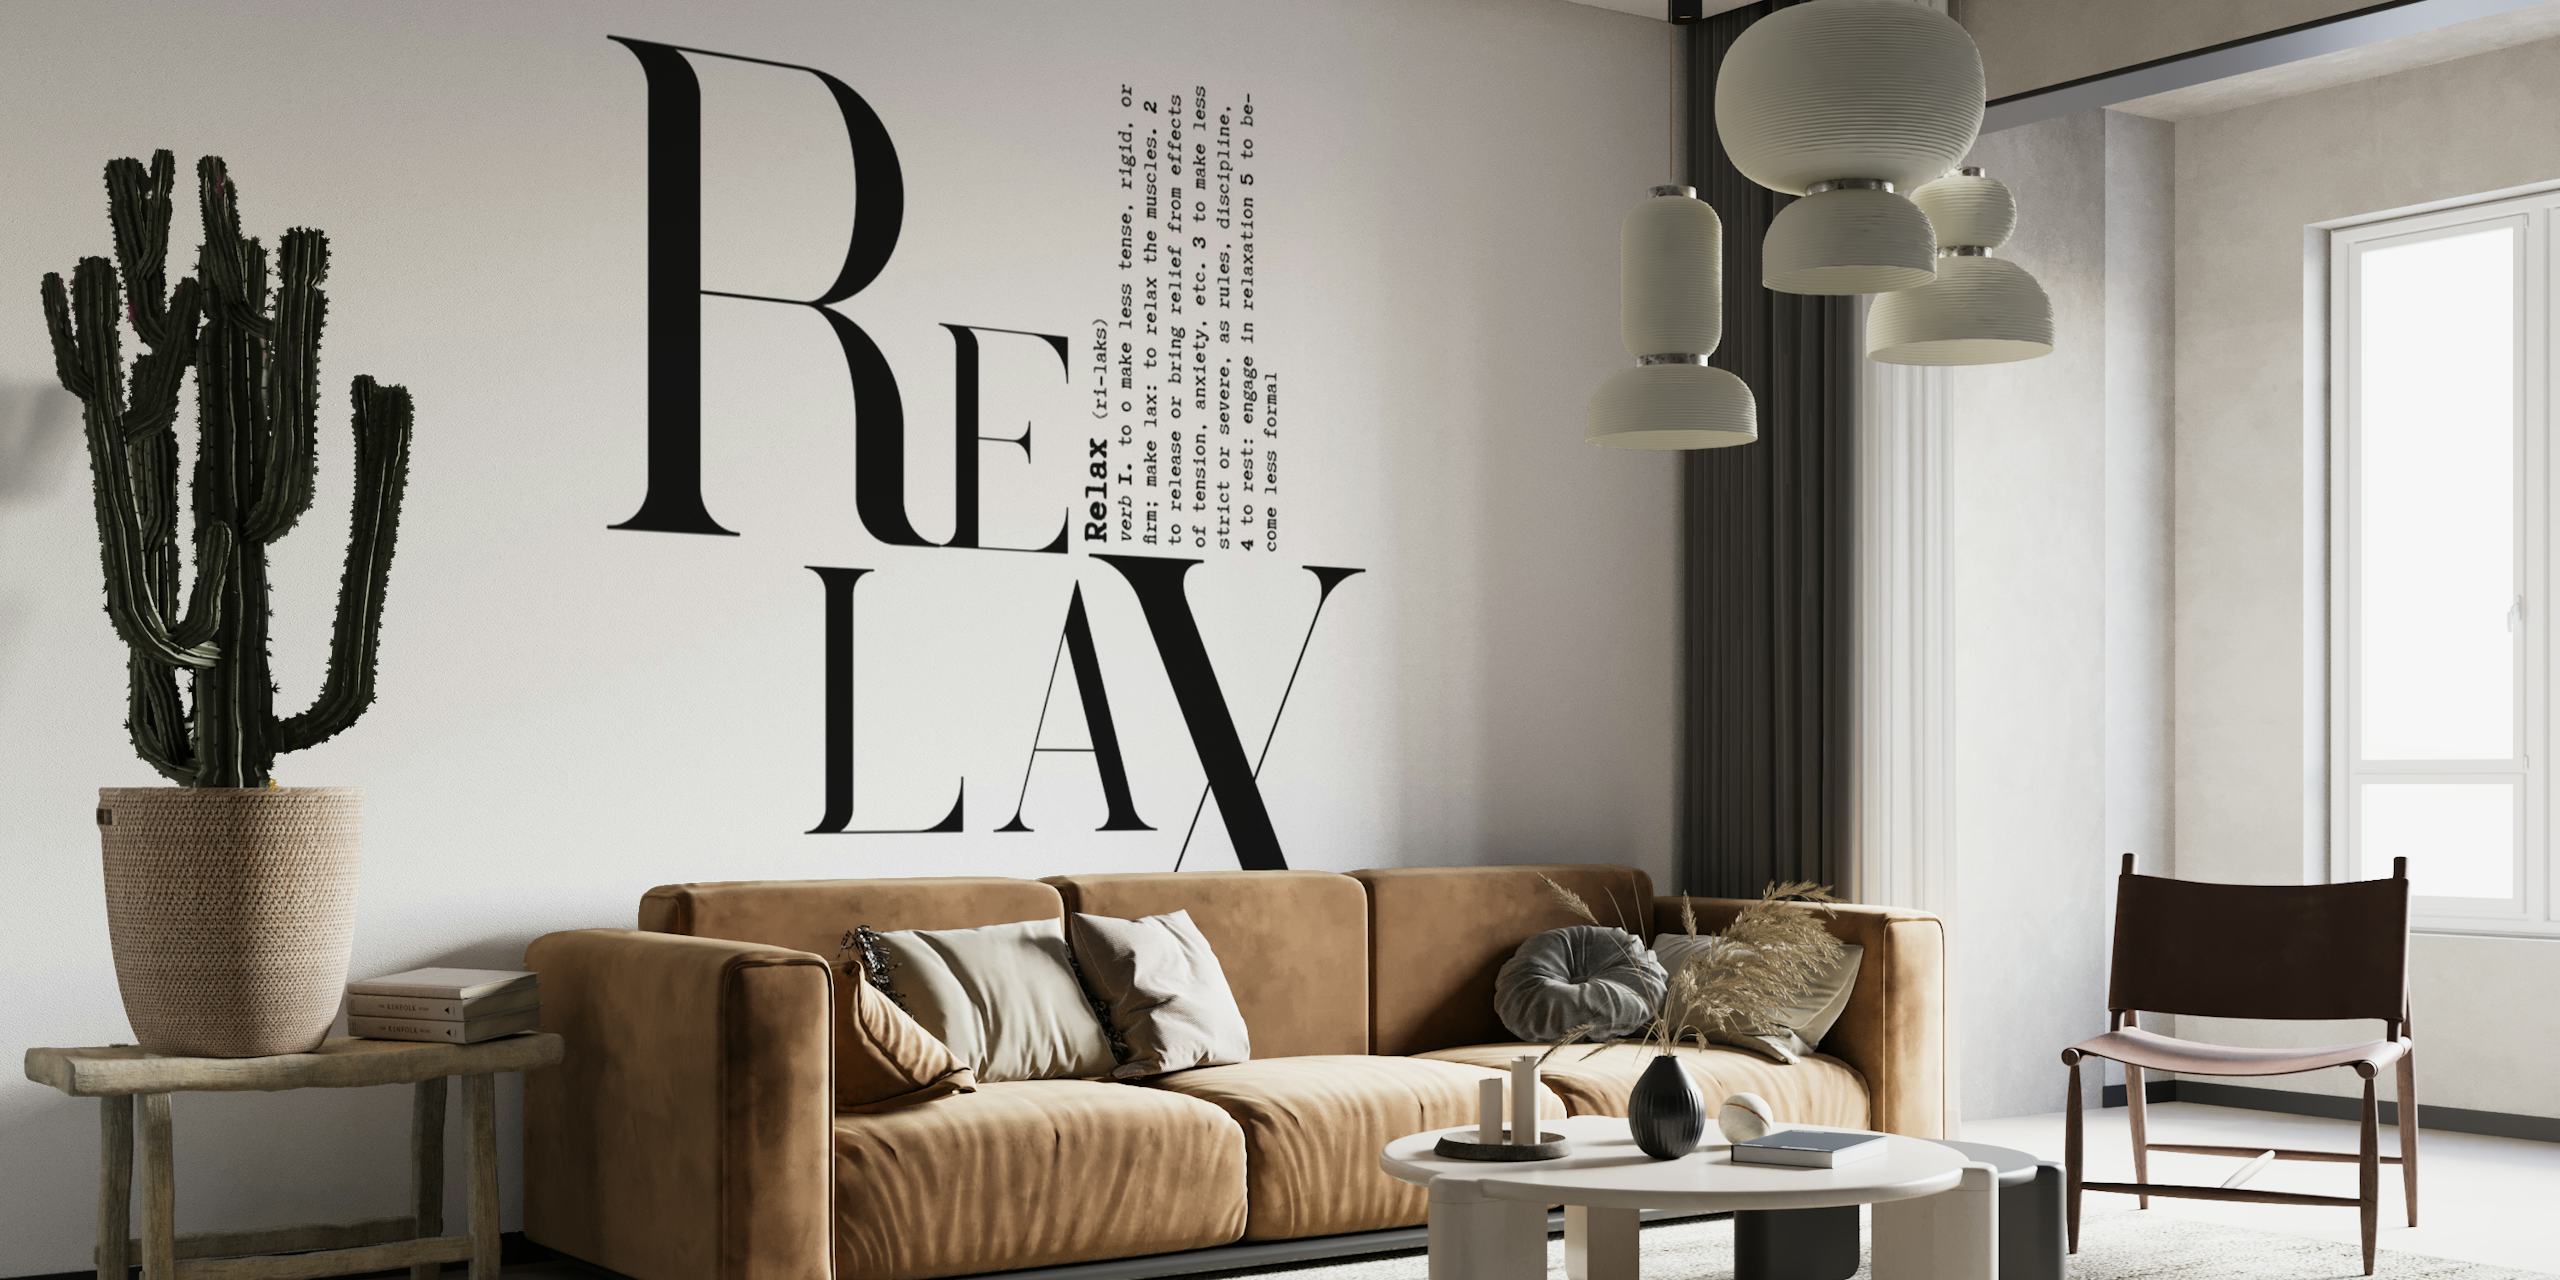 Schwarz-weißes typografisches Wandbild mit dem Wort „RELAX“ in einer kreativen Schriftart